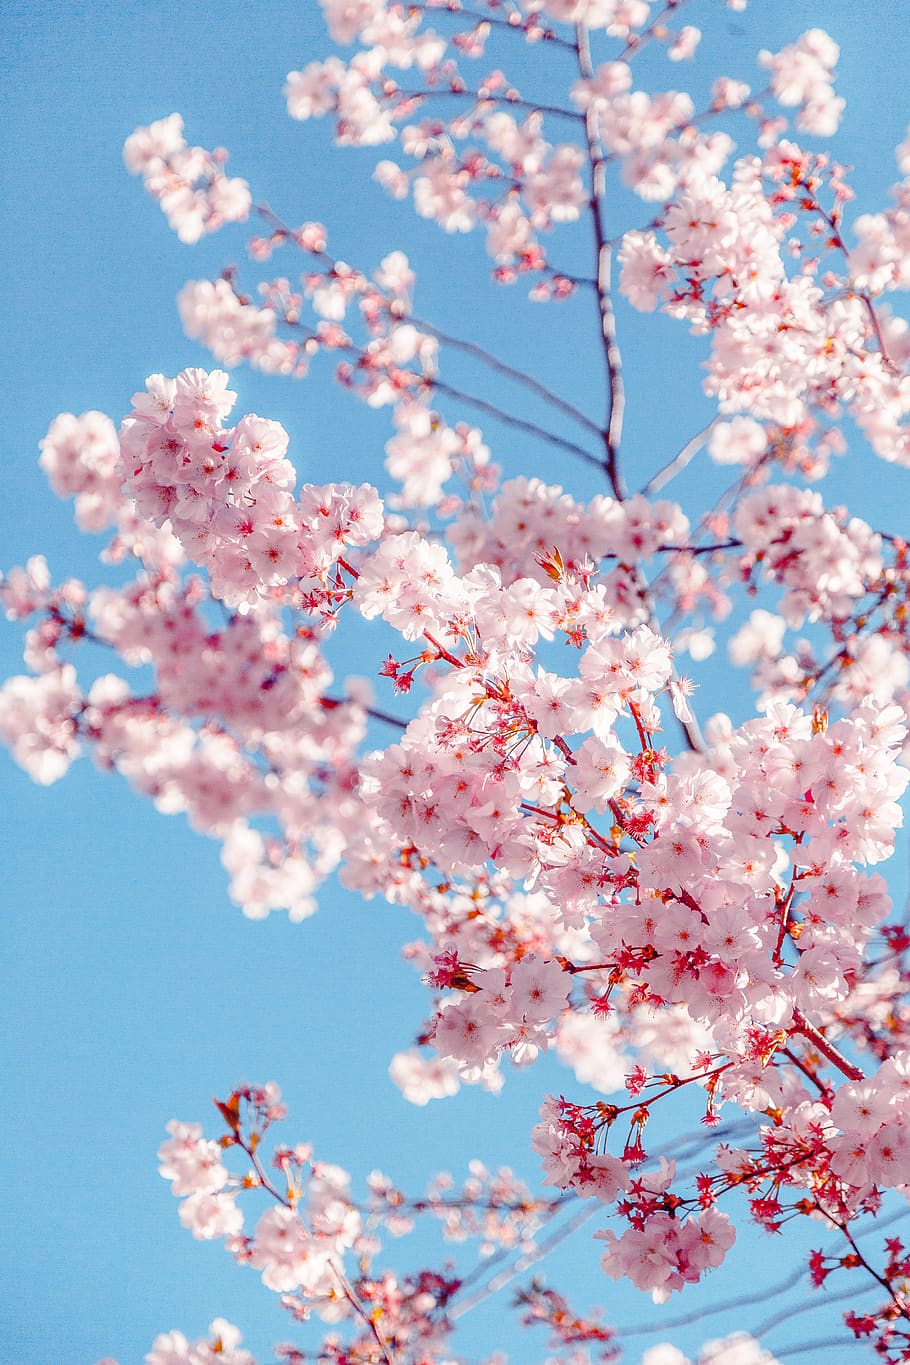 Cây hoa anh đào Sakura là một trong những biểu tượng đặc trưng của Nhật Bản, mang đến cho người đứng nhìn cảm giác thanh tịnh và thư thái. Nếu bạn muốn khám phá cảnh sắc Nhật Bản đầy ma mị qua hình ảnh, hãy chọn từ khóa \